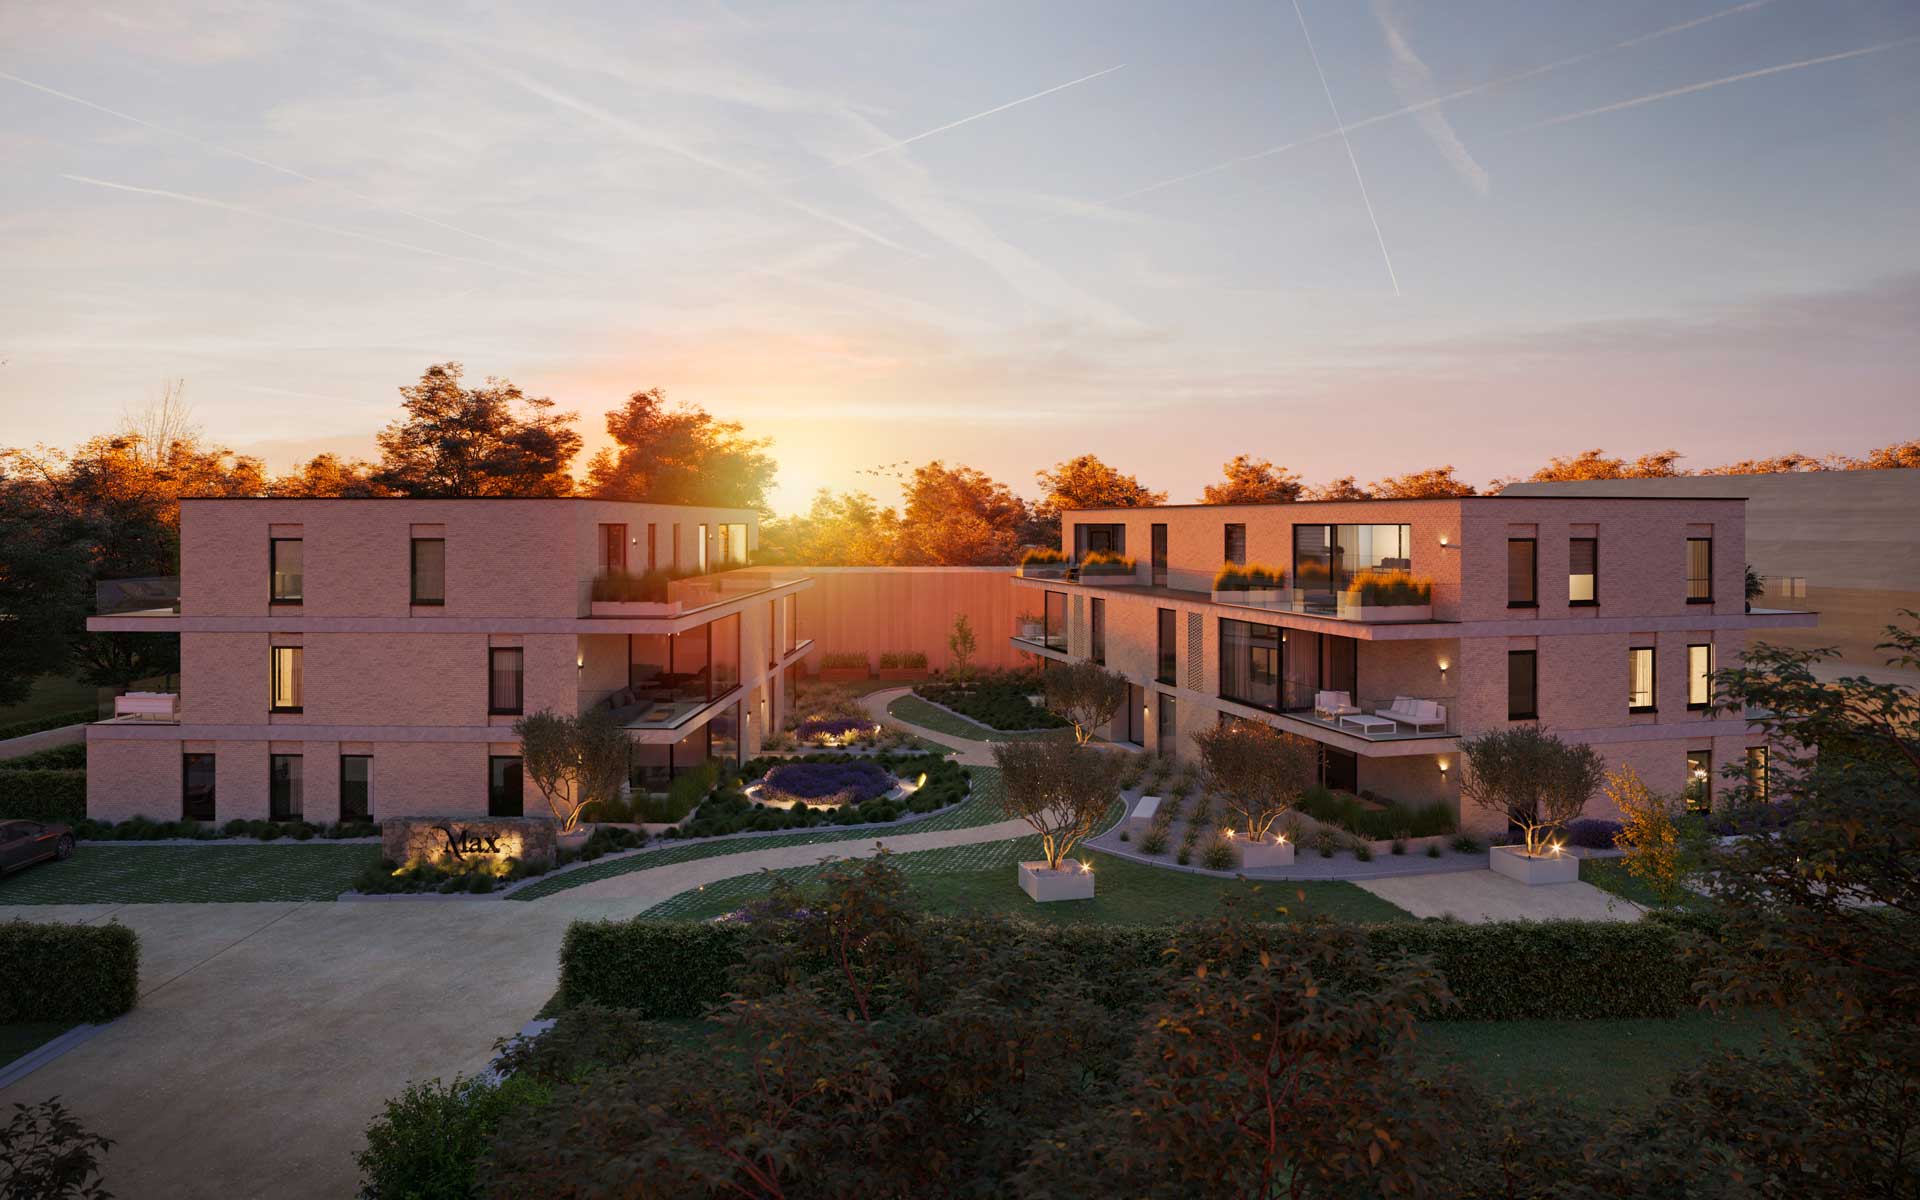 Ontdek de Provence in Wezemaal. 's Avonds de zonsondergang bewonderen op het terras met een goed glas wijn.